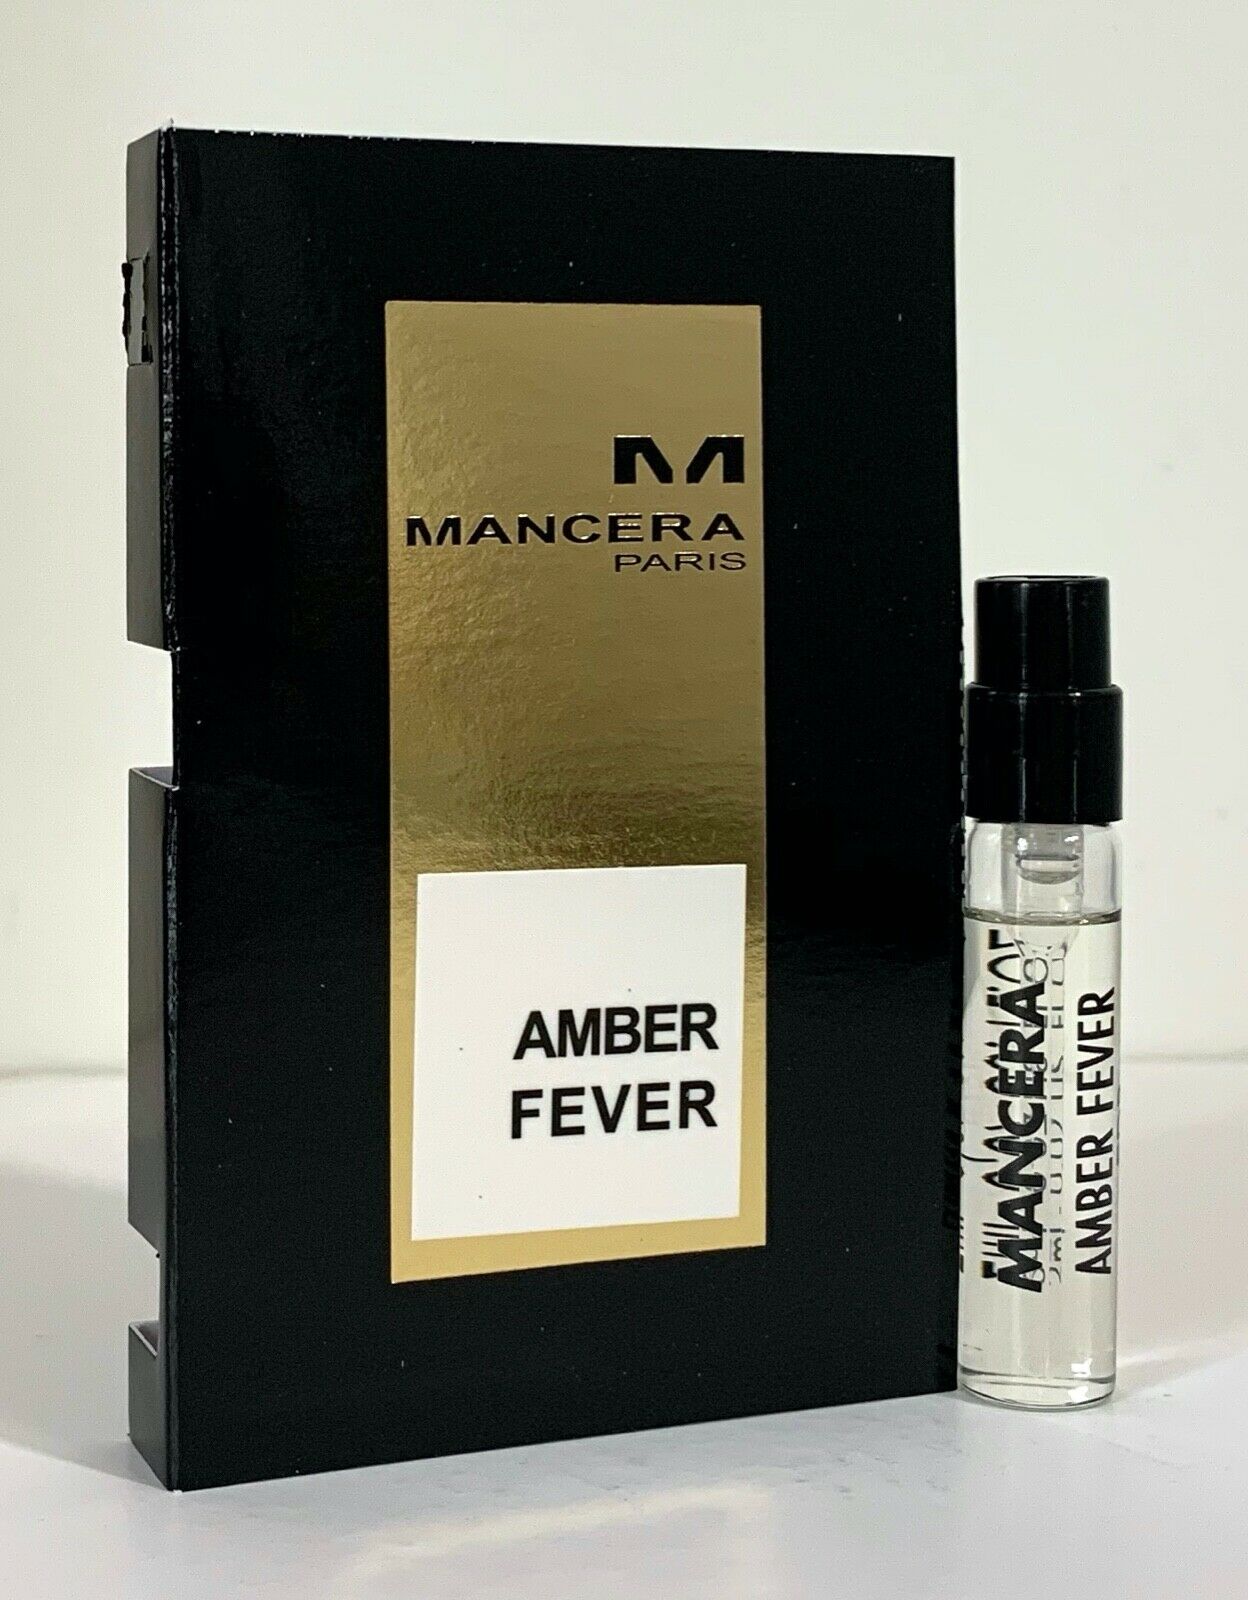 folt Amber Fever hivatalos illatminta 2ml 0.06 fl. oz., Mancera Amber Fever 2 ml 0.06 fl. oz. hivatalos parfüm minta